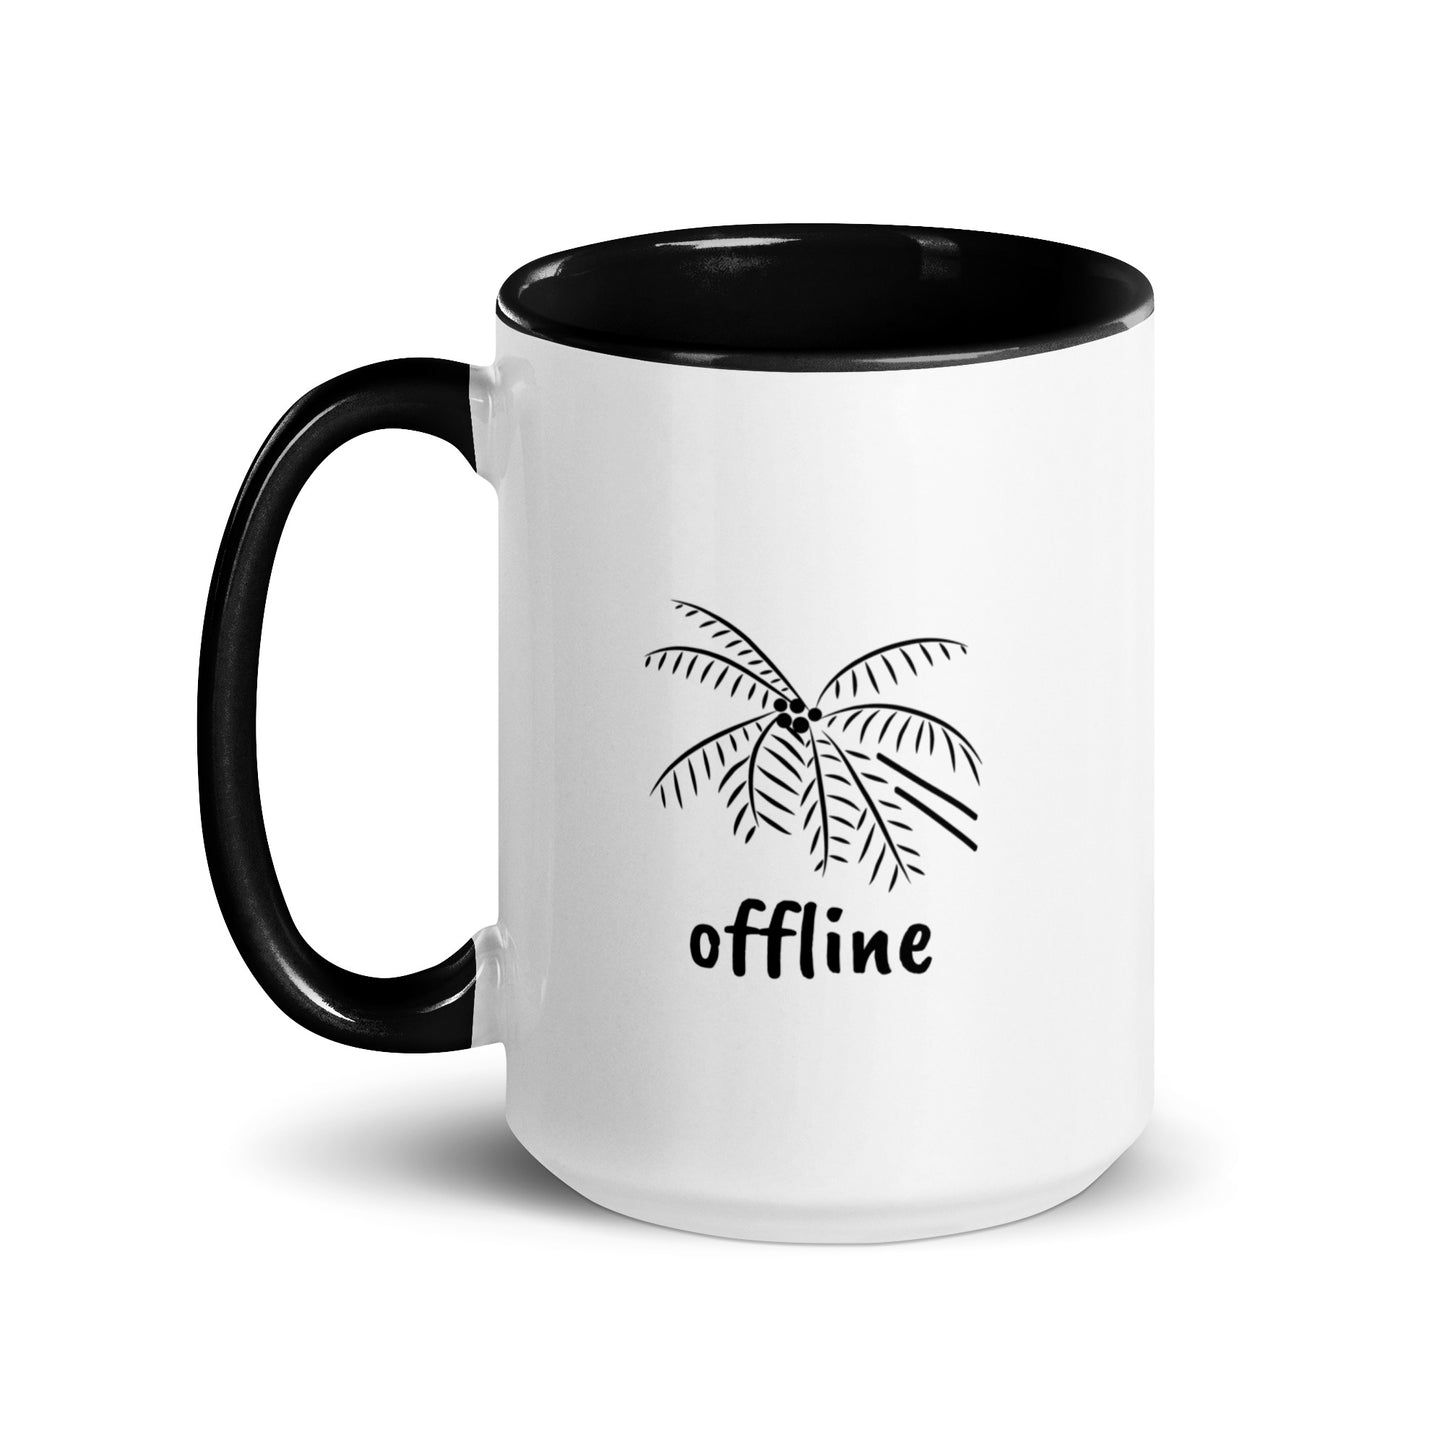 Tranquil Retreat Offline Mug